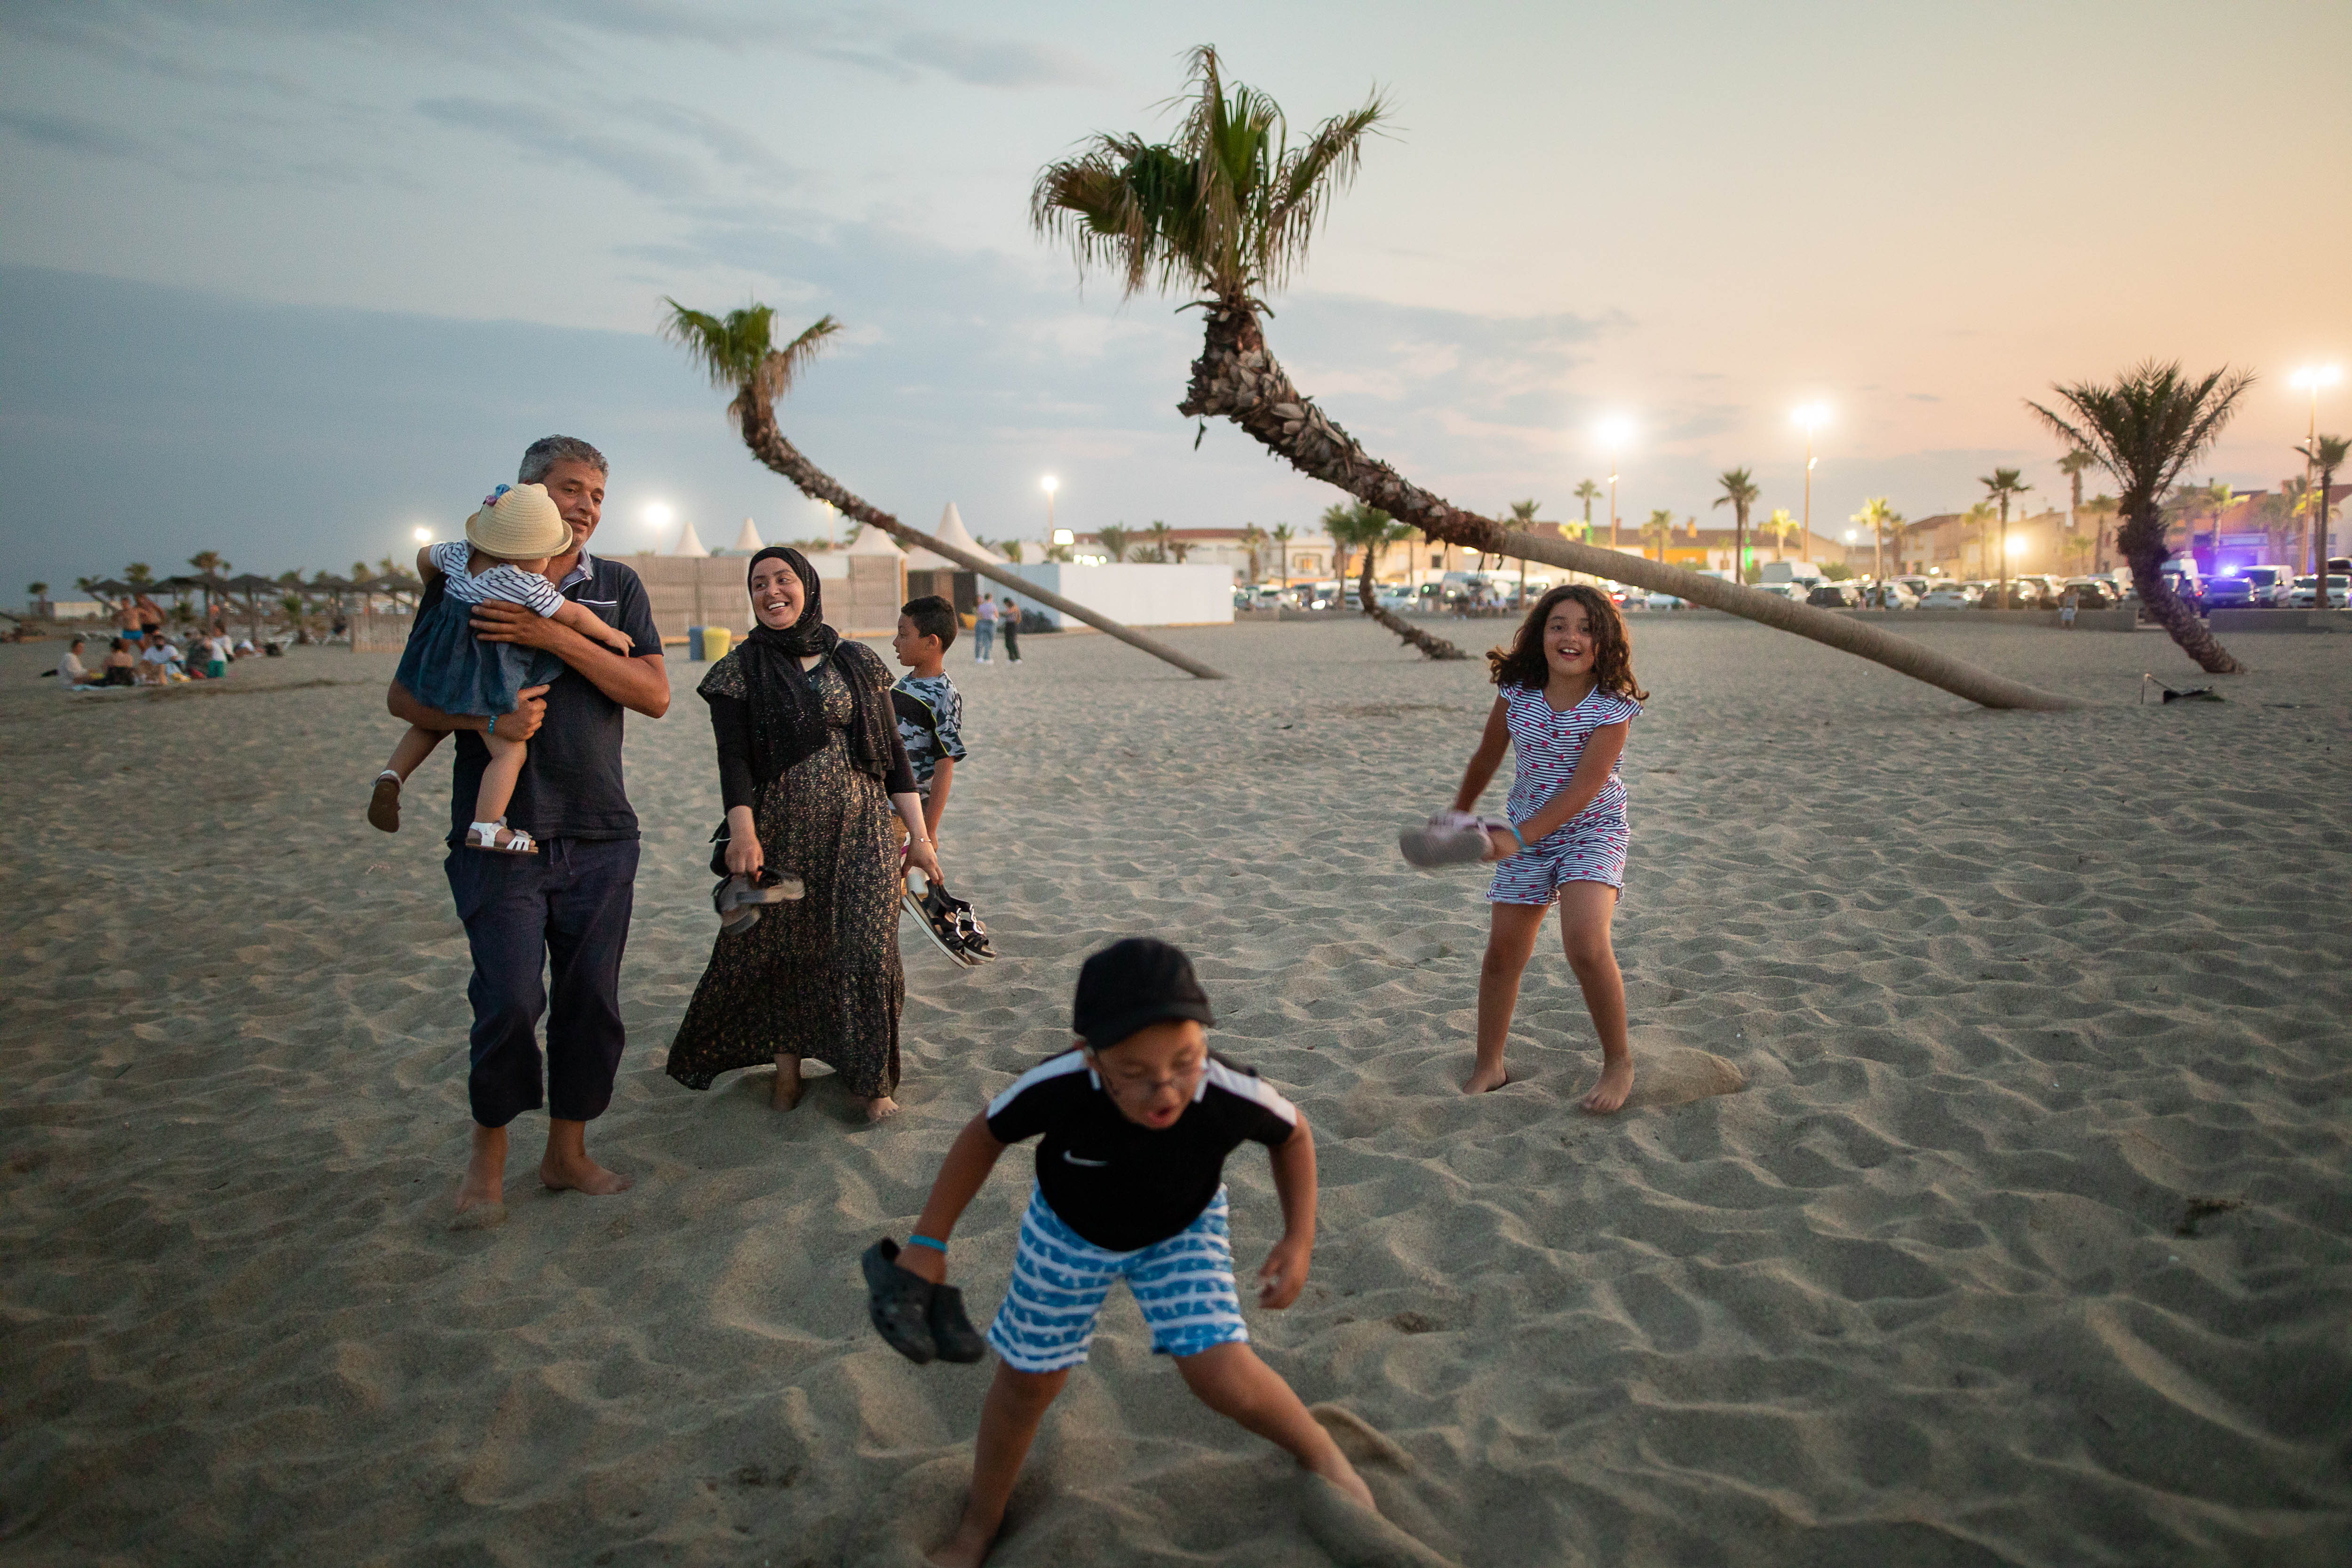 Vacances en famille, à la plage. Crédits photos : ©Anthony Micallef / Secours Catholique